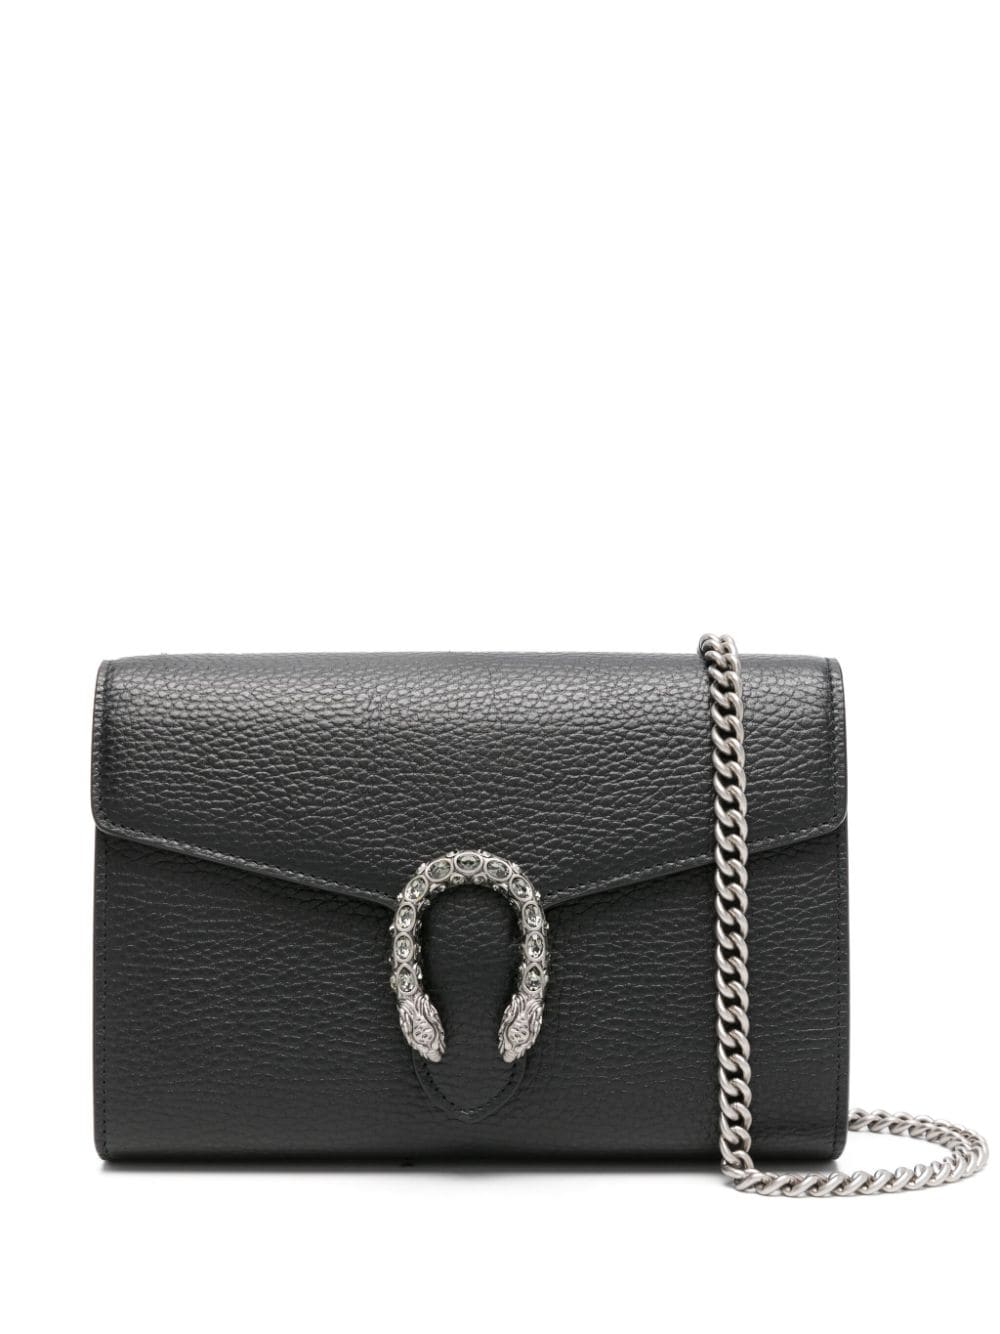 Gucci mini Dionysus leather clutch bag - Black von Gucci